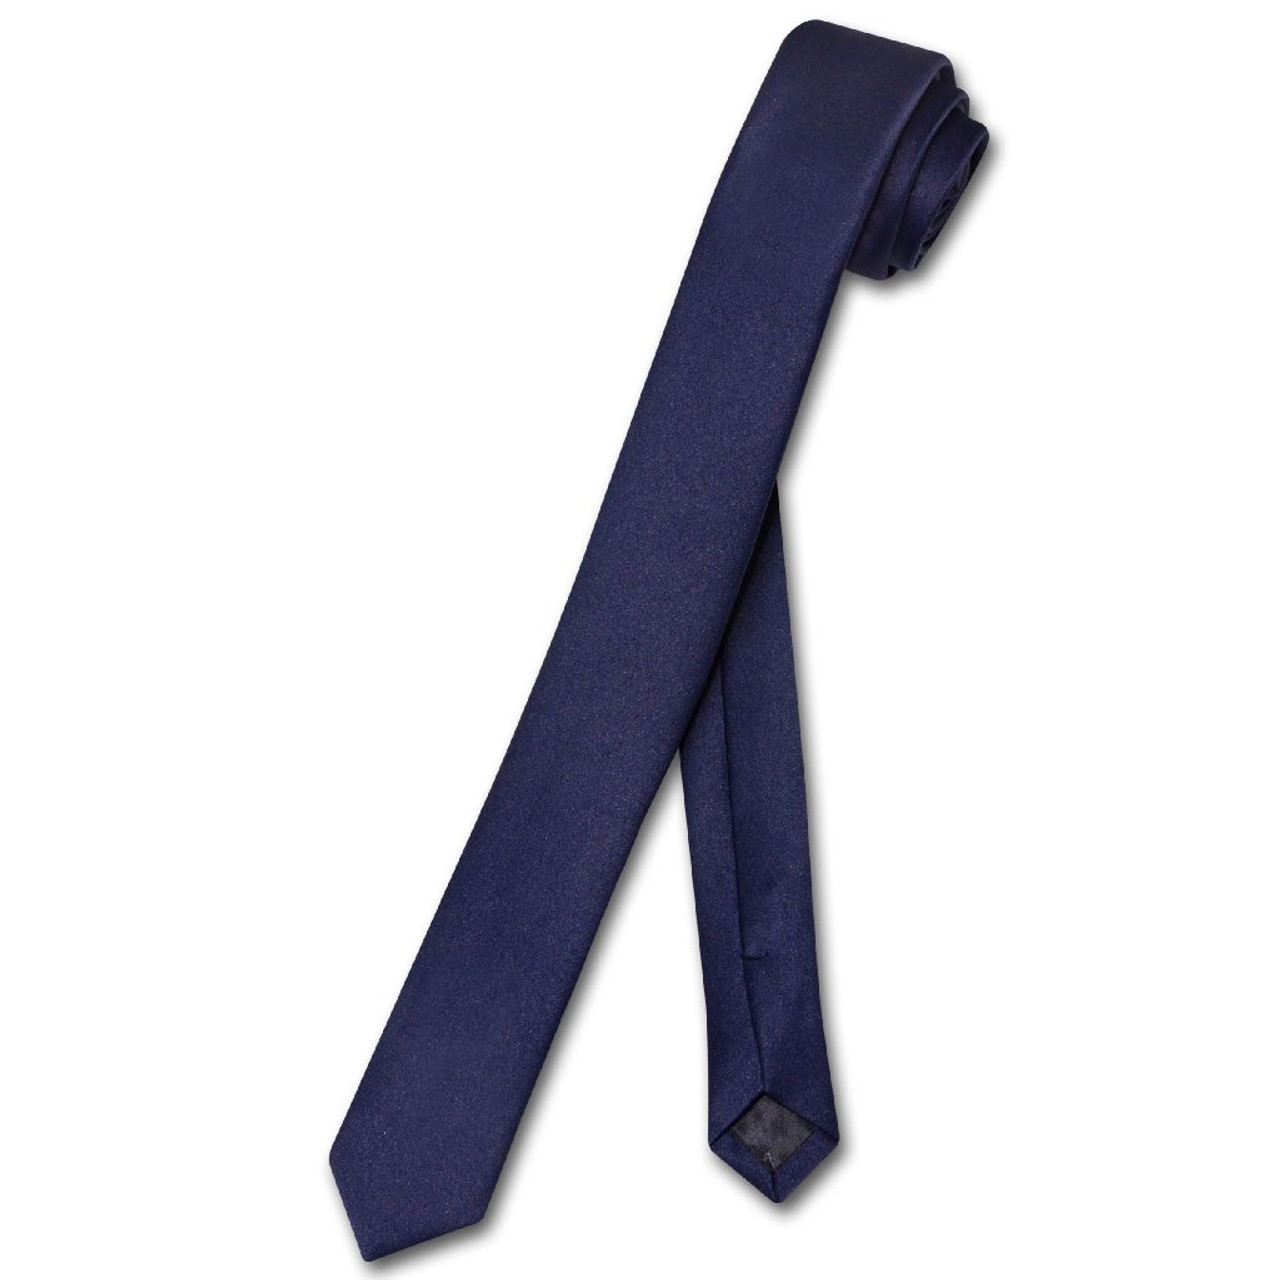 Vesuvio Napoli Boy's CLIP-ON NeckTie Solid NAVY BLUE Color Youth Neck Tie